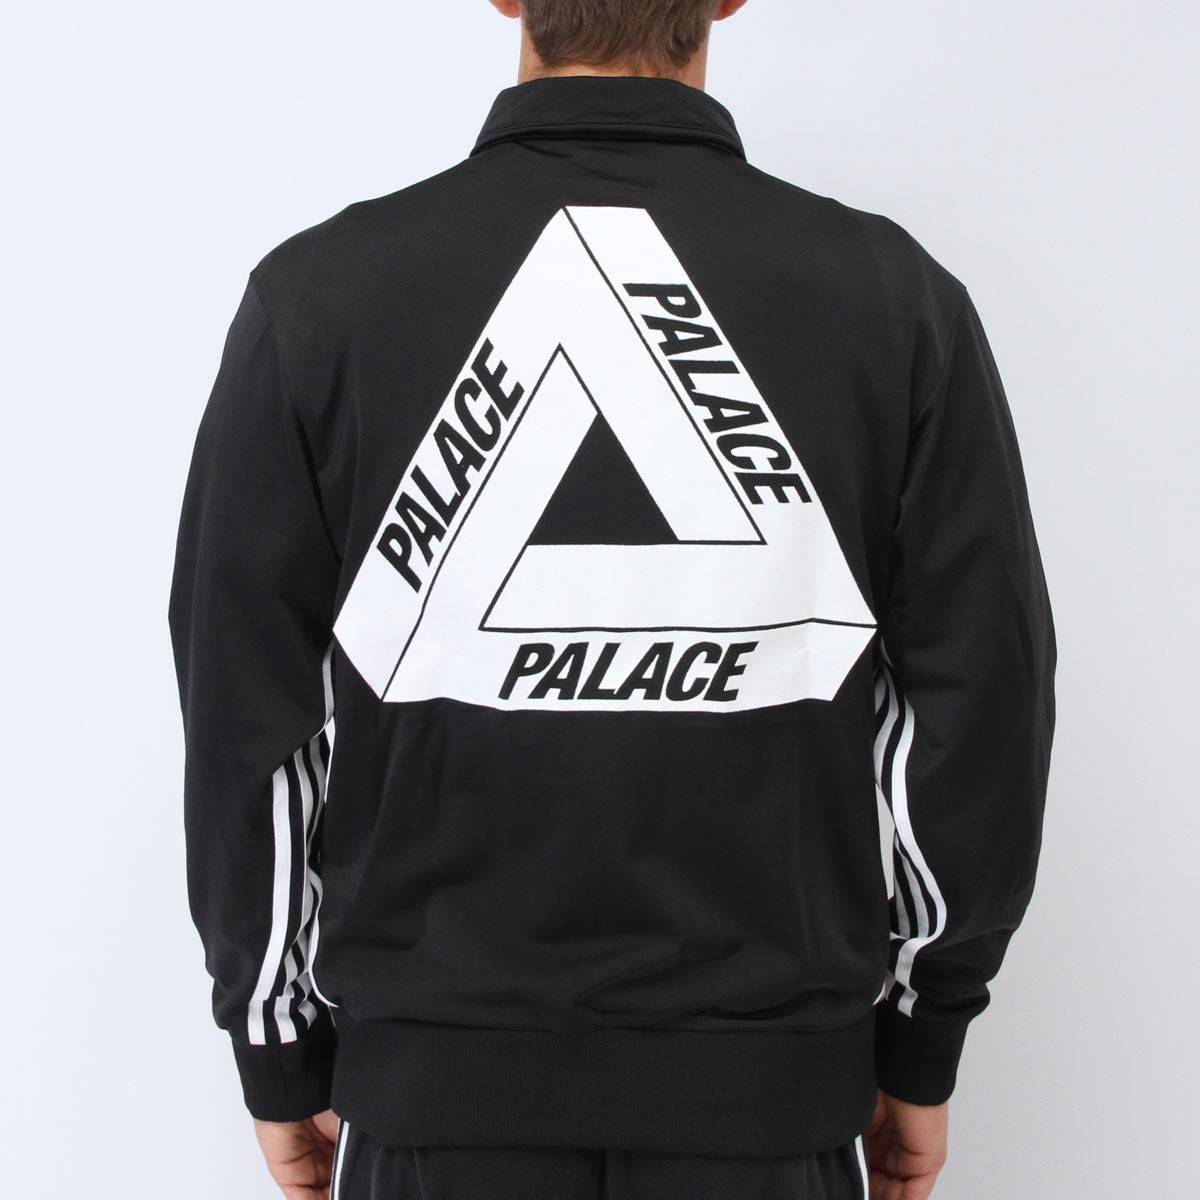 Palace Adidas jacket